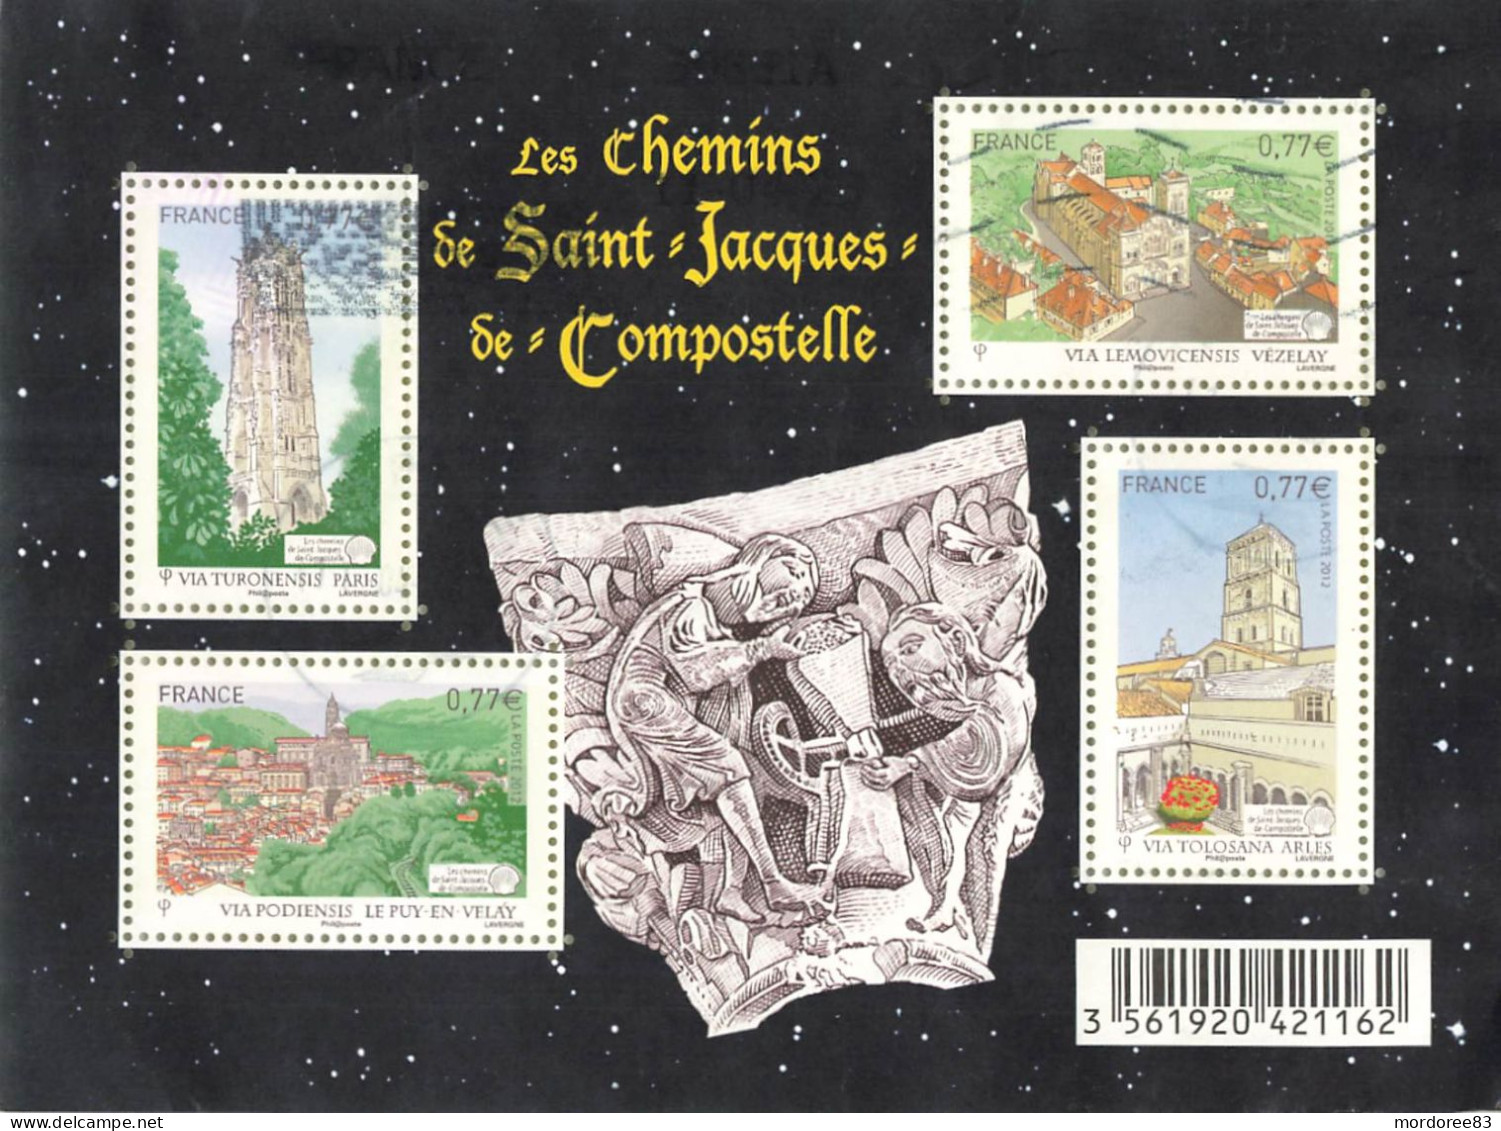 FRANCE 2012 BLOC OBLITERE LES CHEMINS DE SAINT JACQUES DE COMPOSTELLE - F 4641 - - Oblitérés